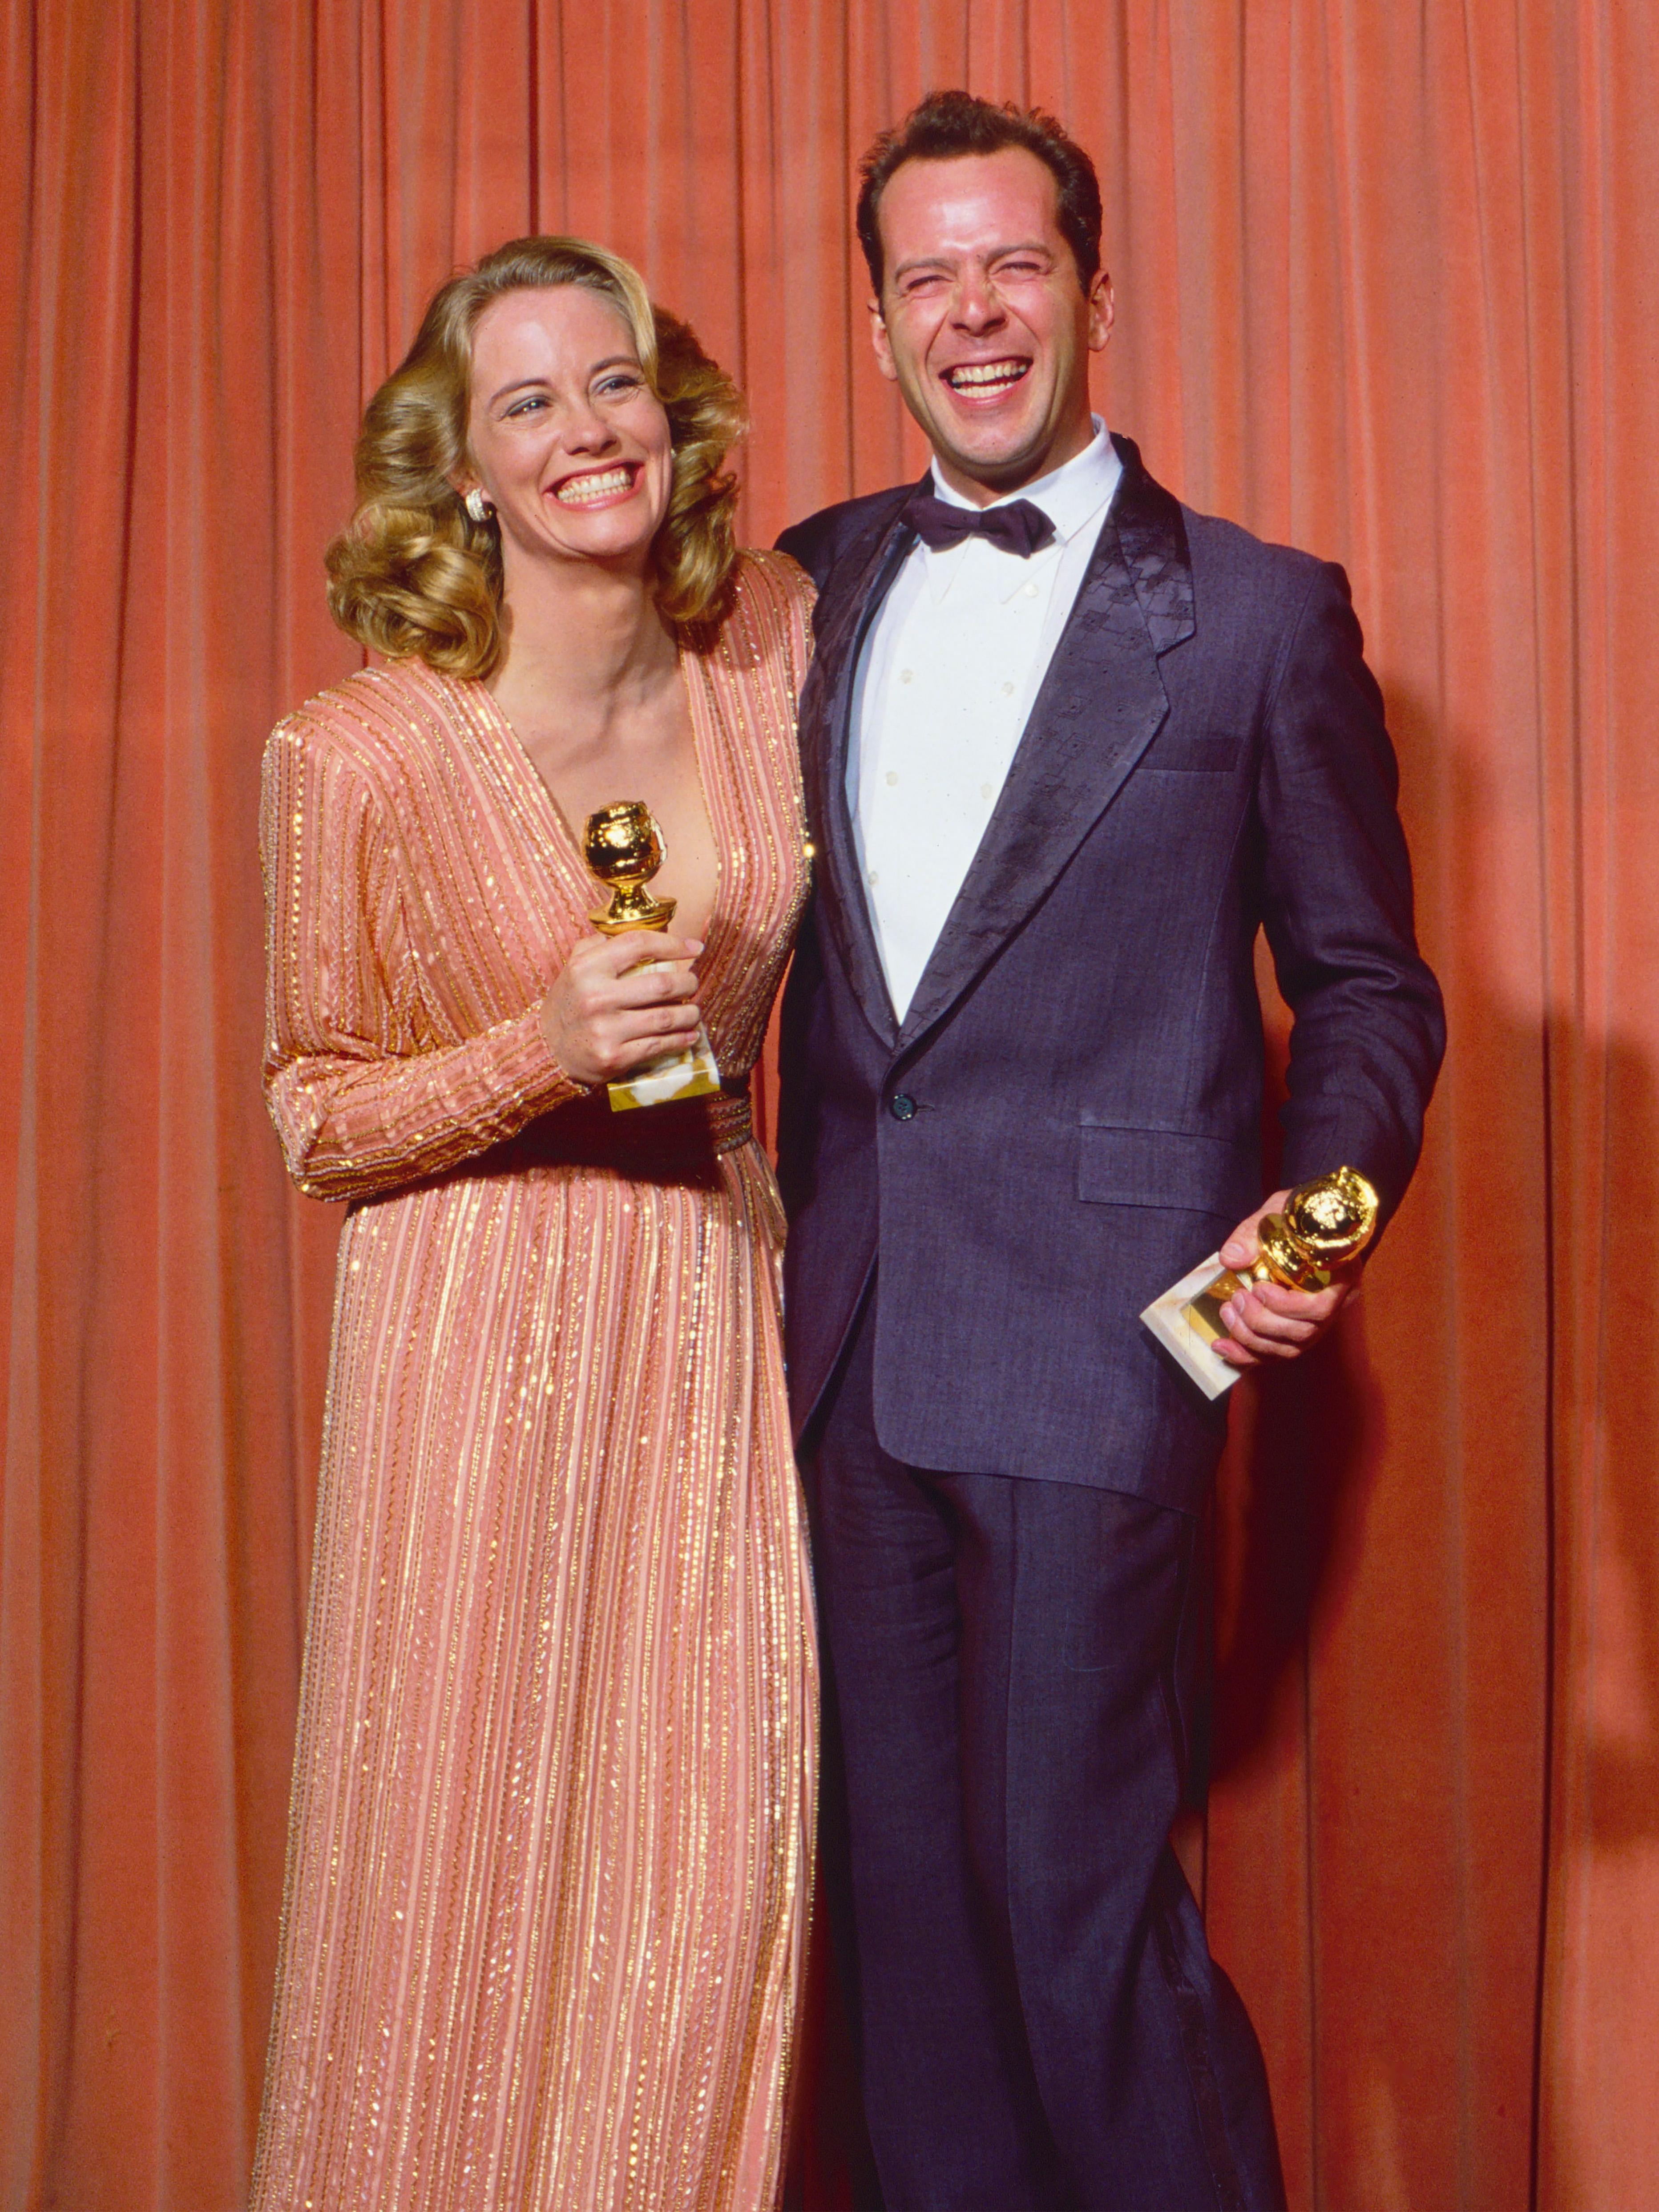 1987 Cybill Shepherd and Bruce Willis, 44th Golden Globes